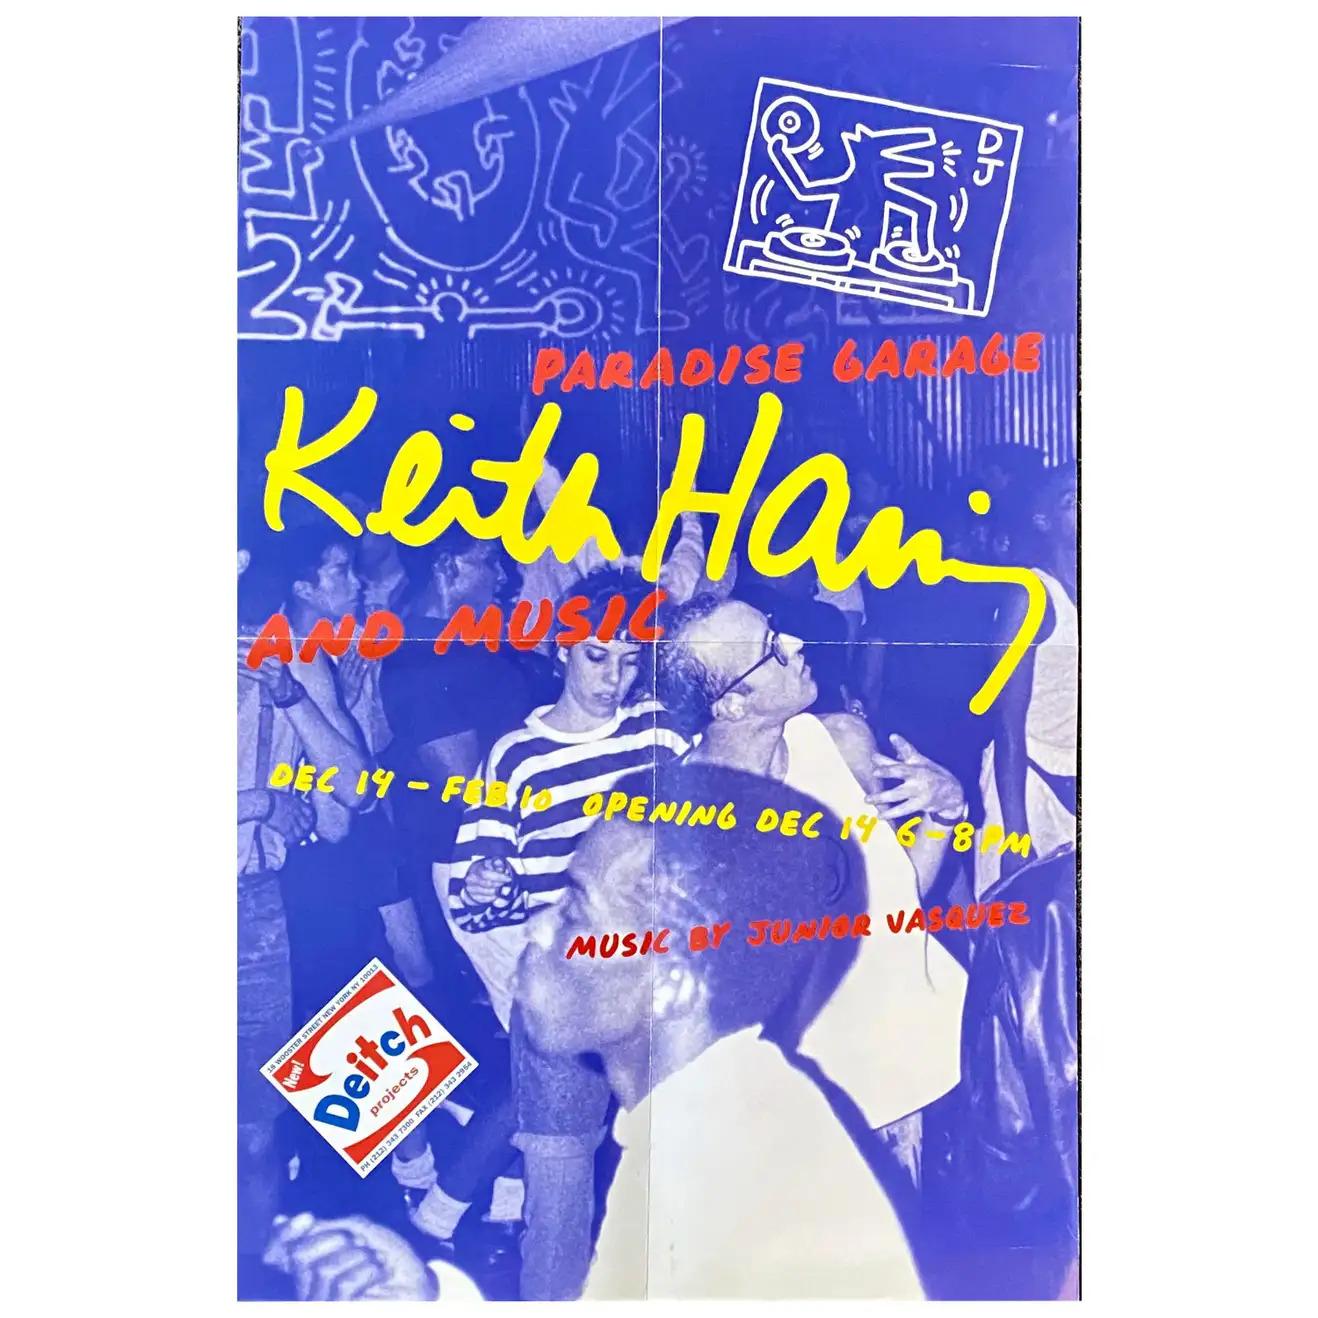 Keith Haring Paradise Garage exhibit poster (Keith Haring Larry Levan) - Print by (after) Keith Haring